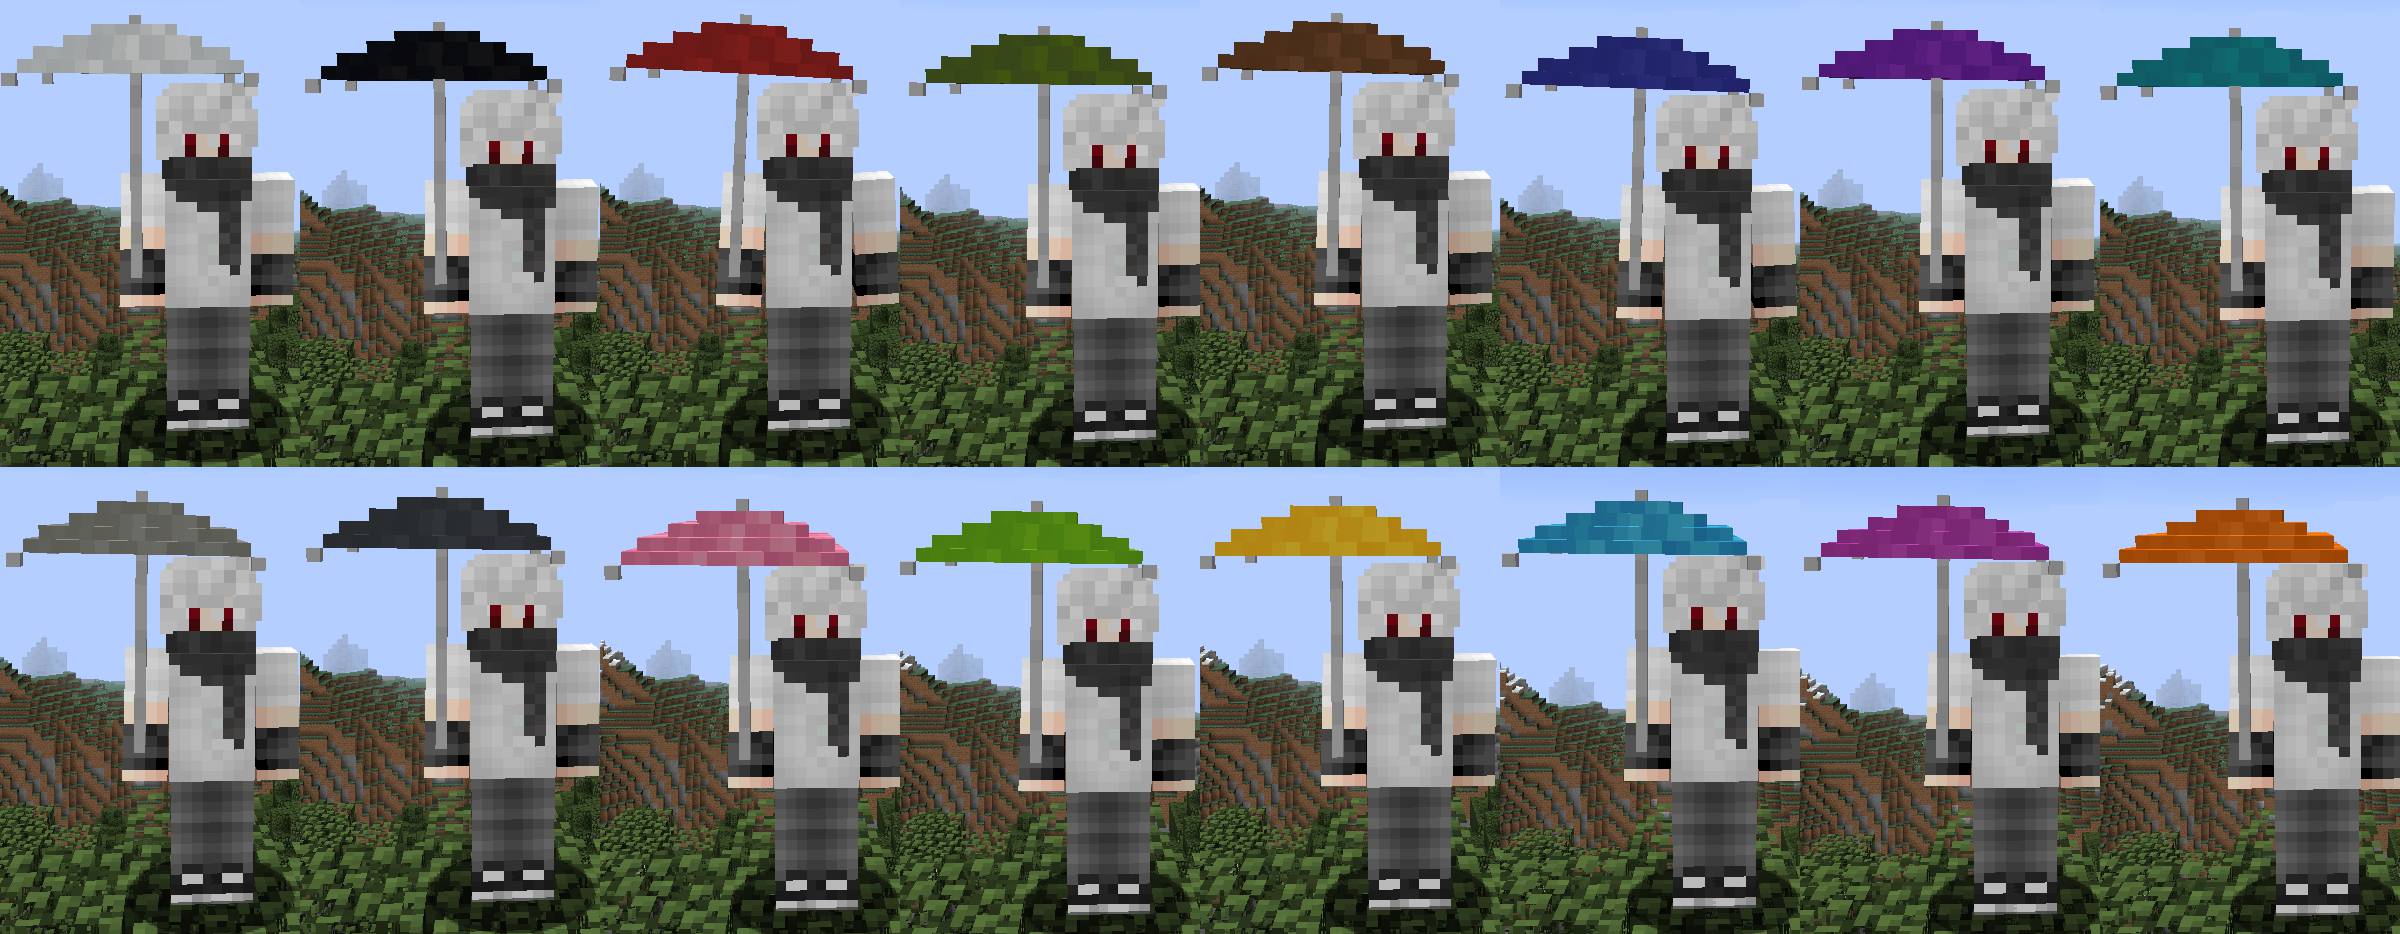 Los vampiros necesitan paraguas mod para minecraft 21